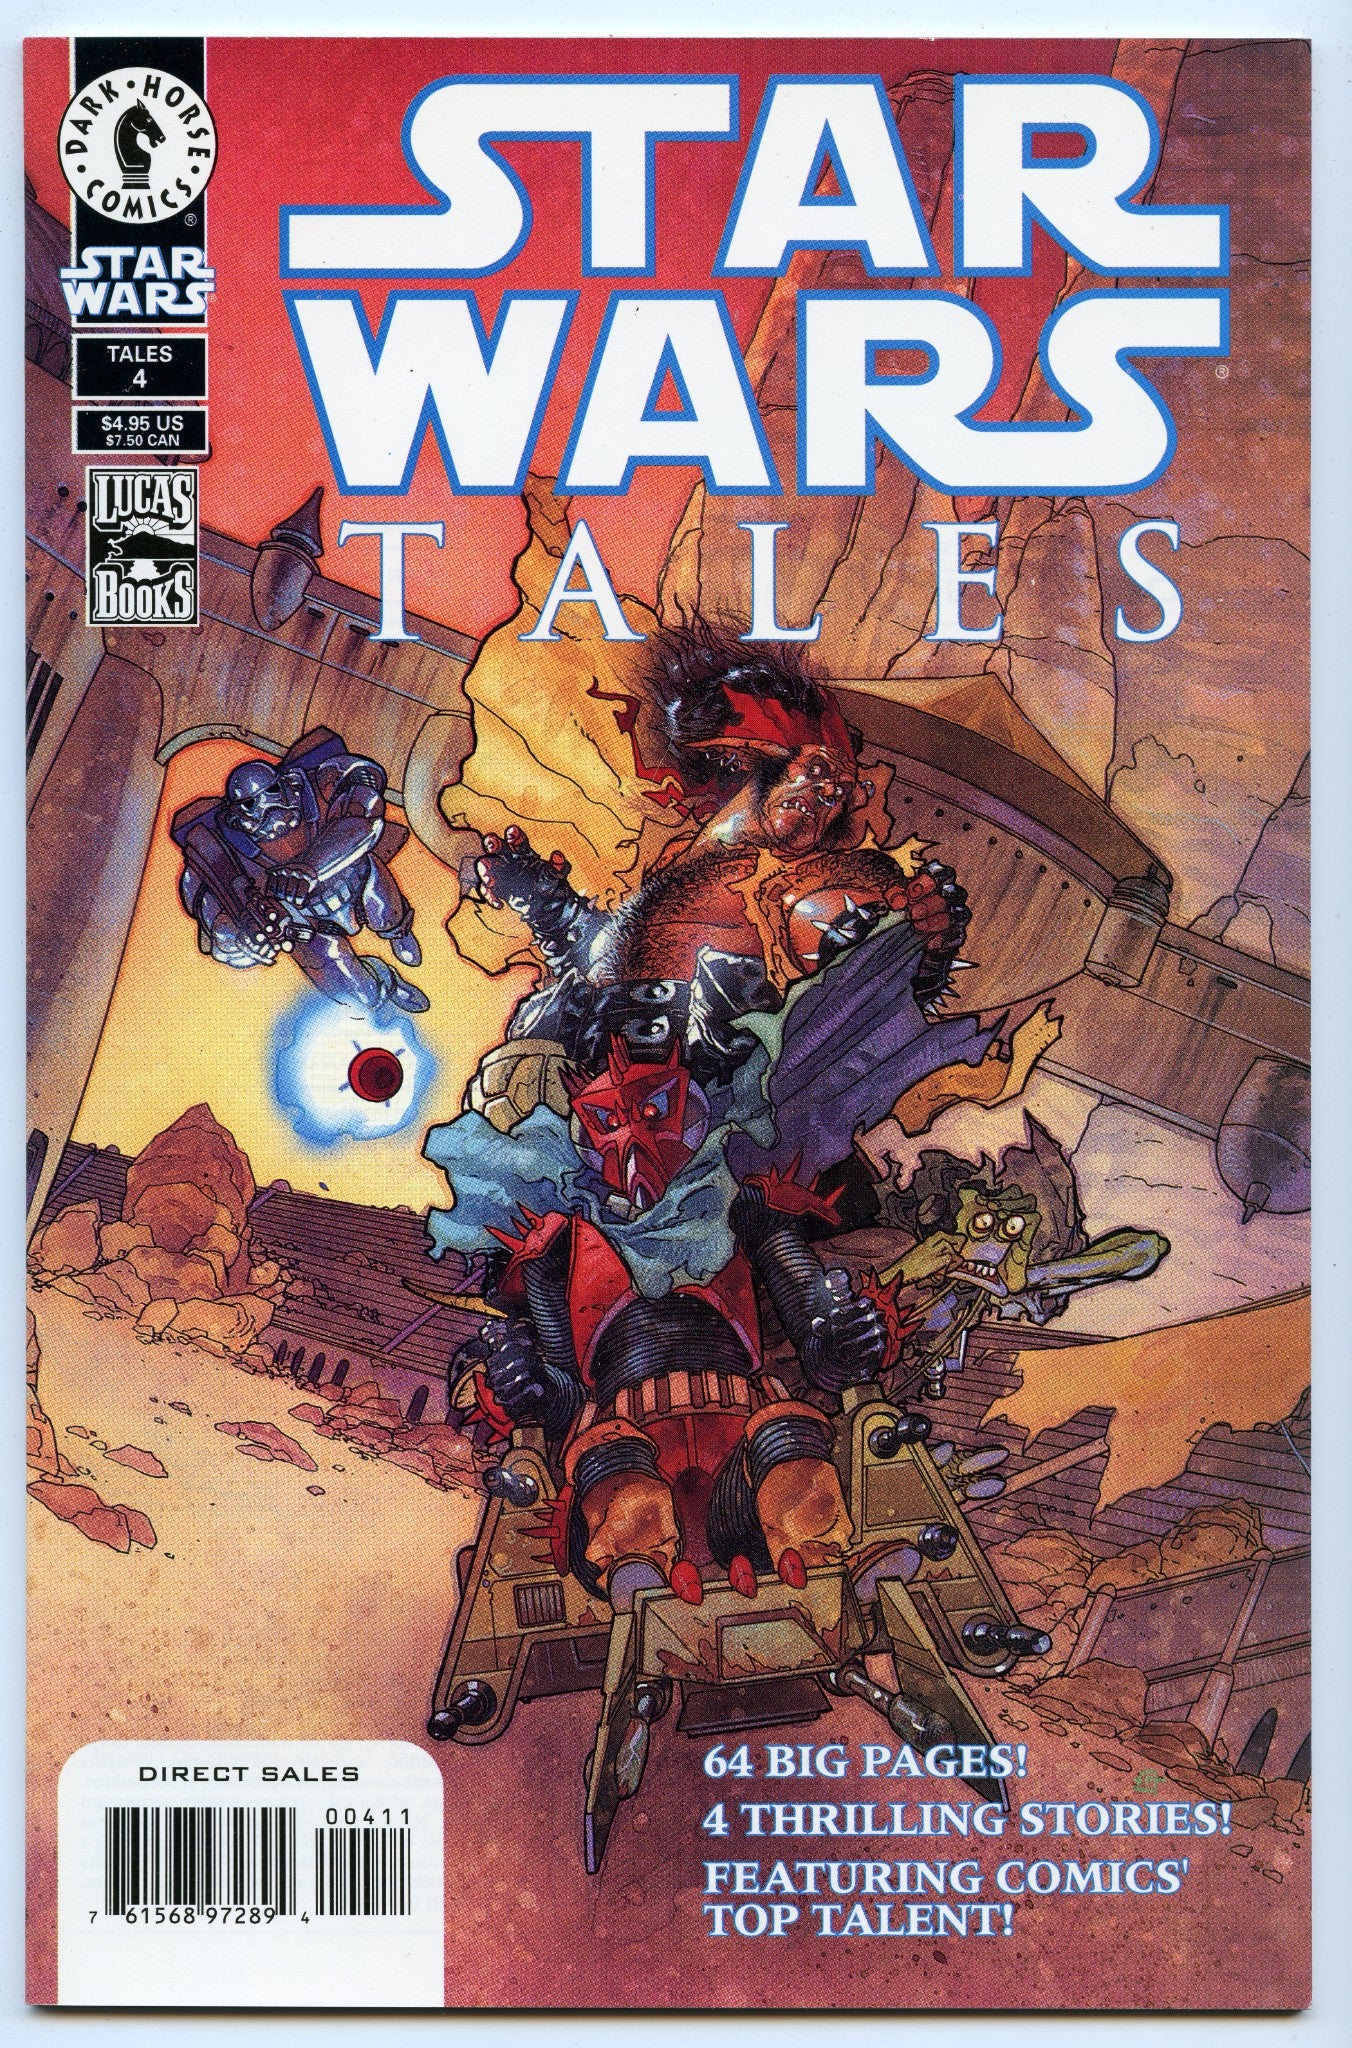 Star Wars Tales 4 (Jun 2000) NM (9.4)